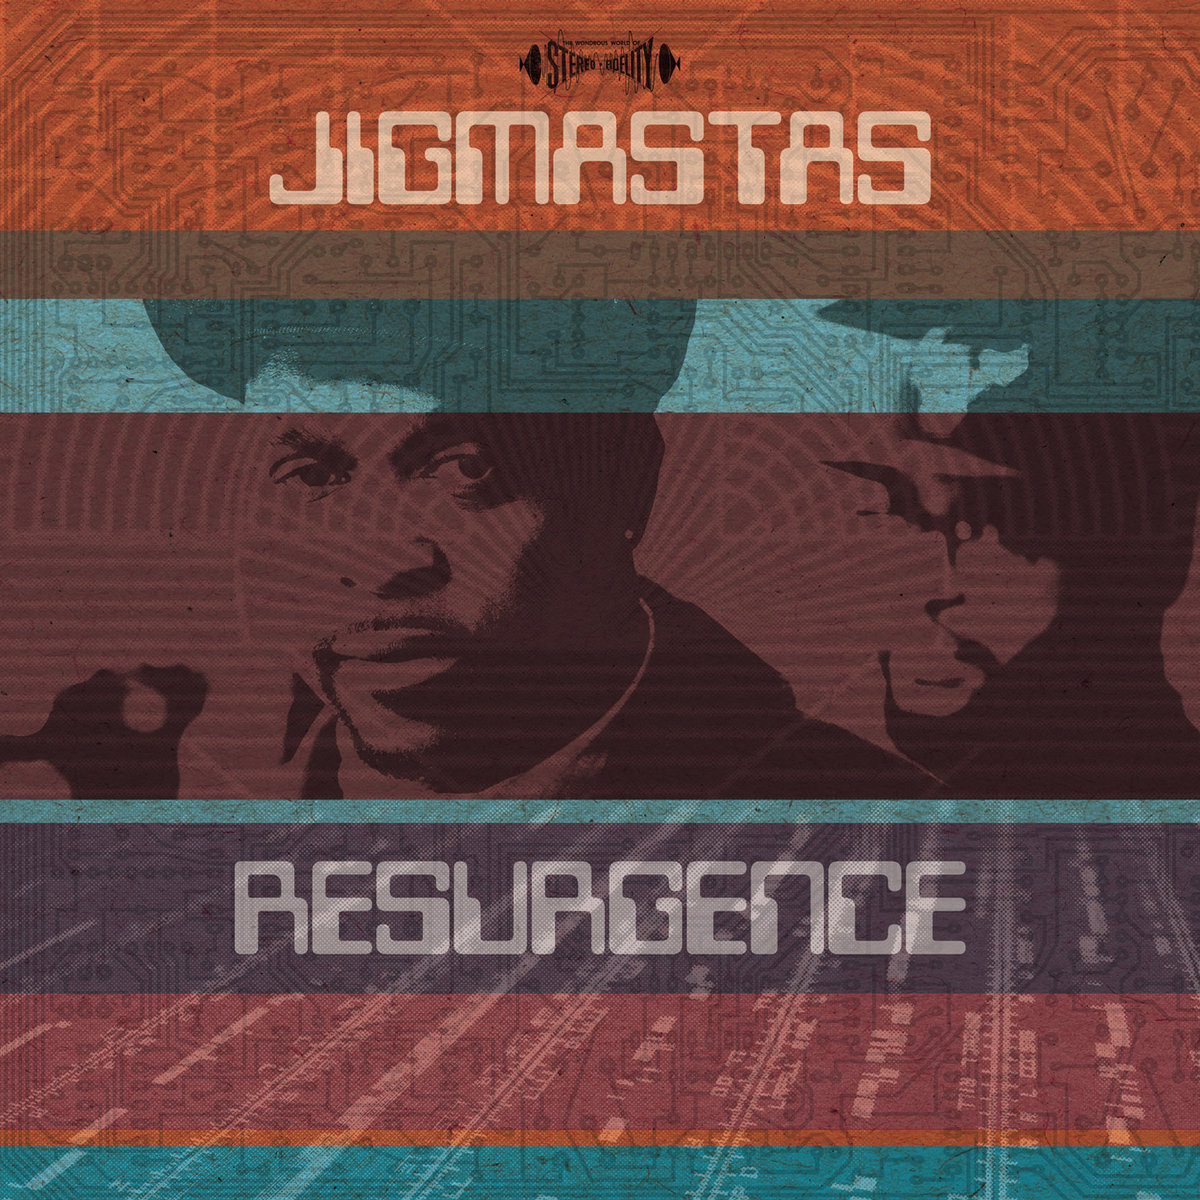 Jiggmastas_-_resurgence